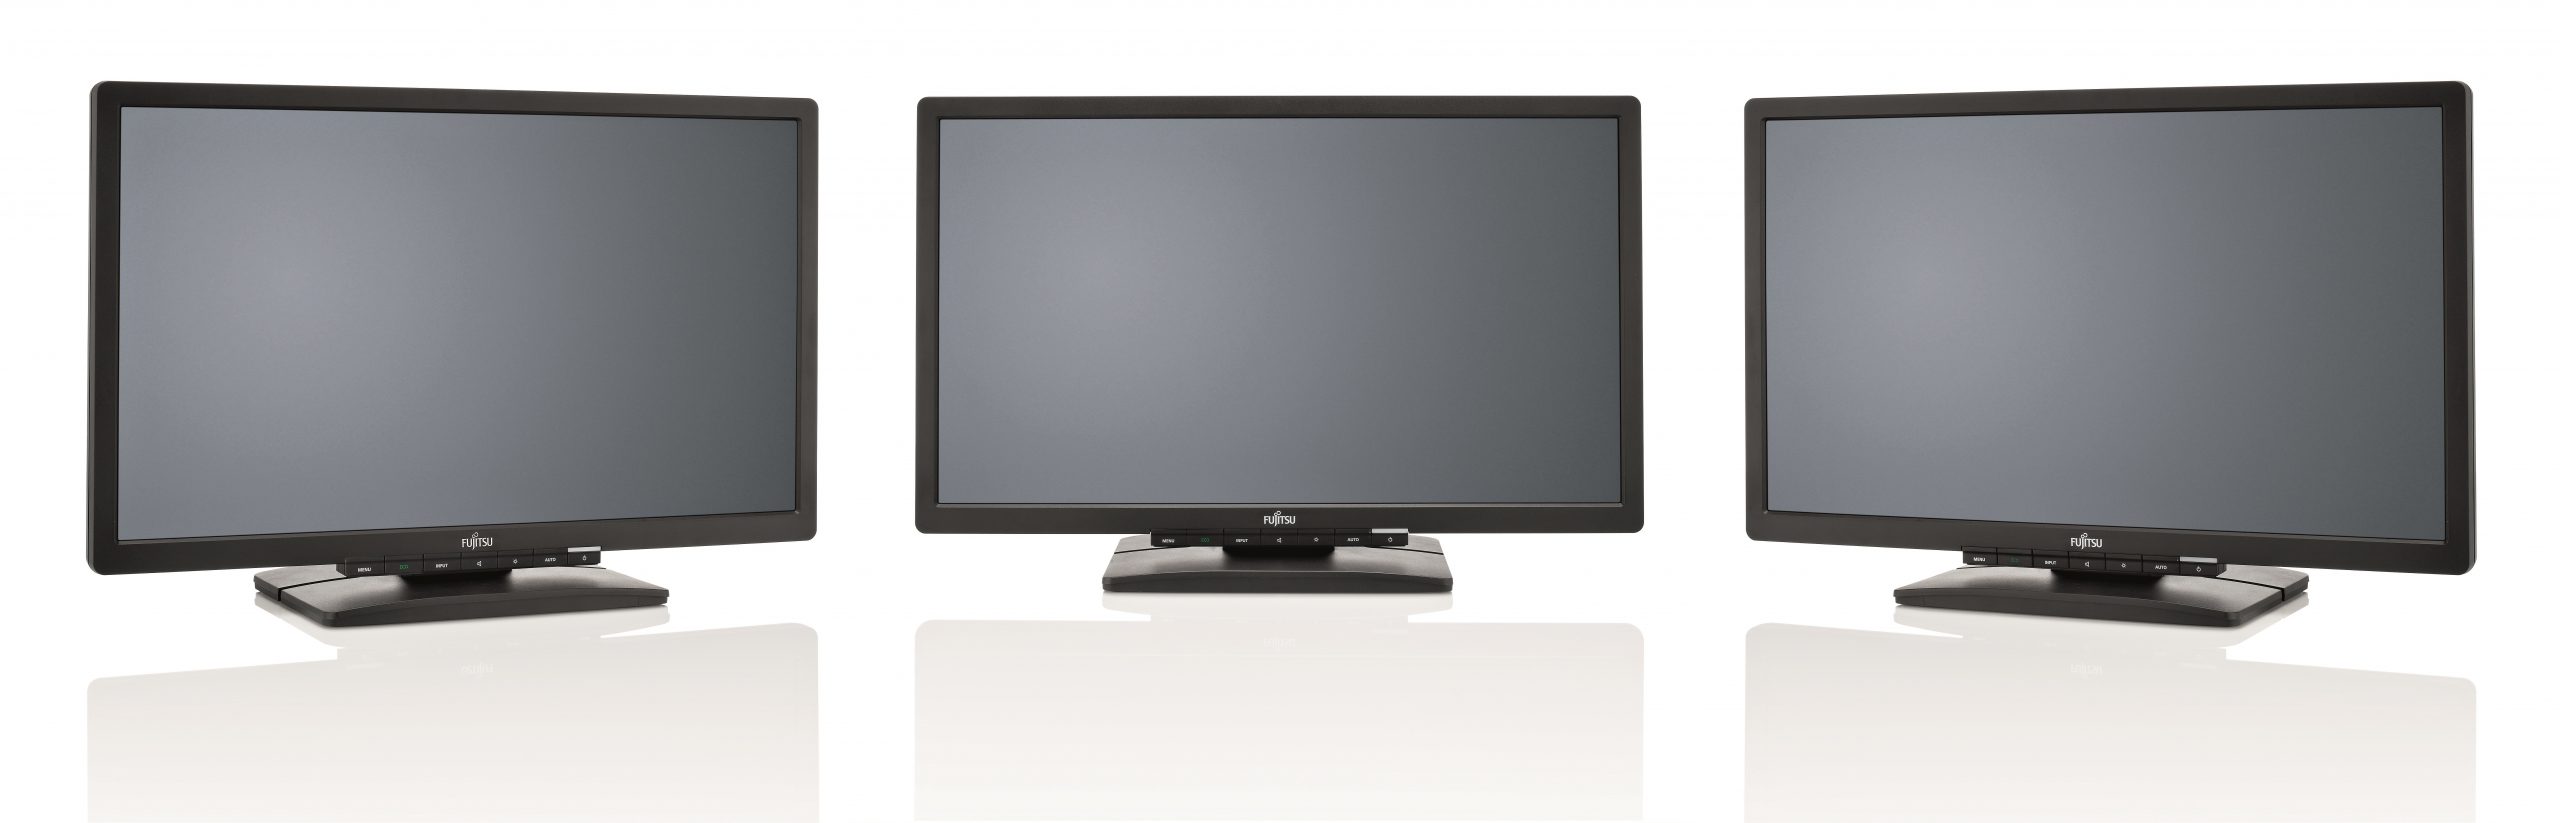 FUJITSU E20T-7 LED LCD Monitor 16:9 20